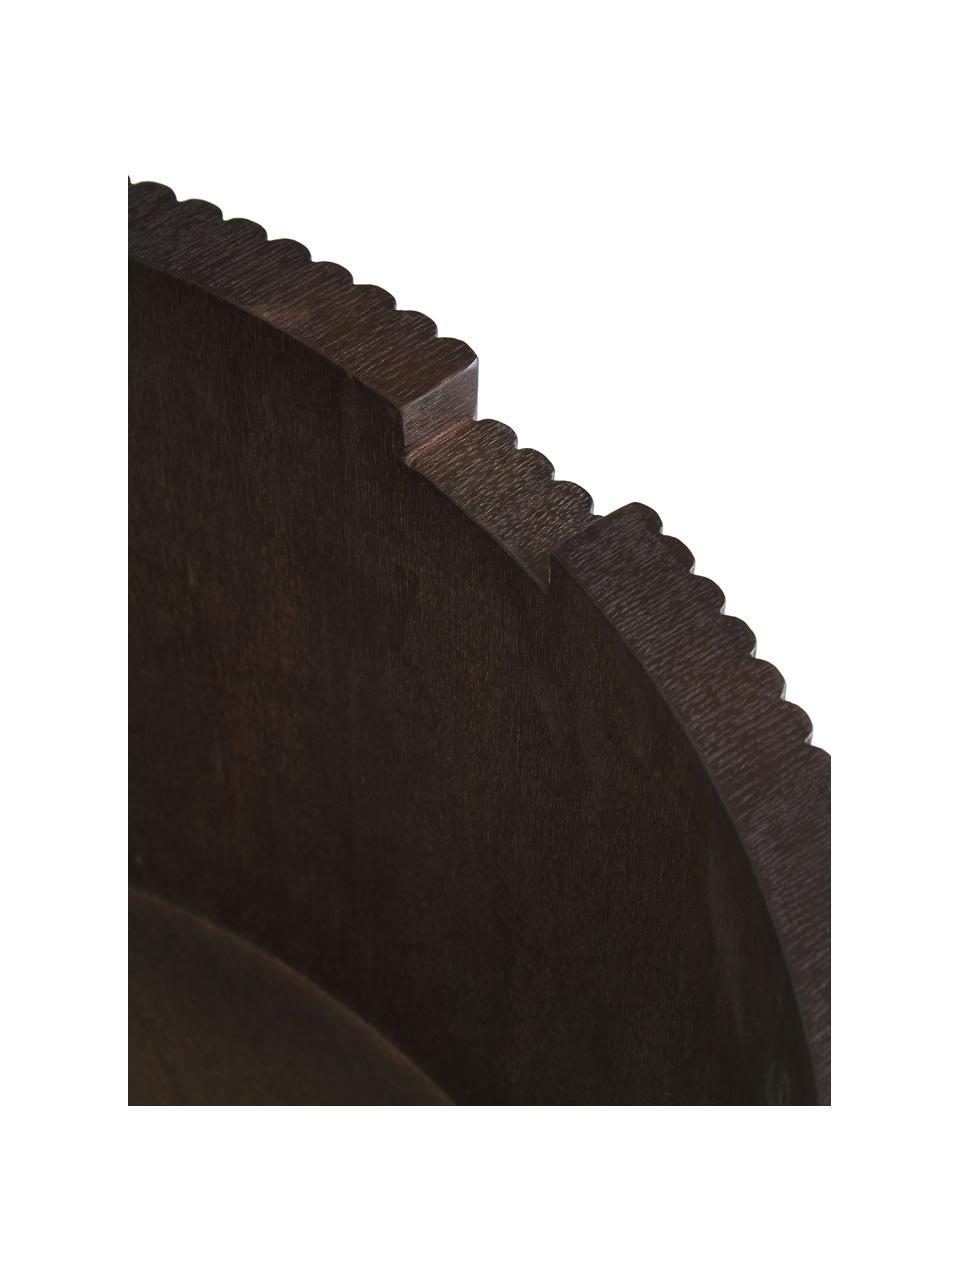 Runder Holz-Couchtisch Nele mit Stauraum, Mitteldichte Holzfaserplatte (MDF) mit Eschenholzfurnier, Dunkelbraun, Ø 70 cm